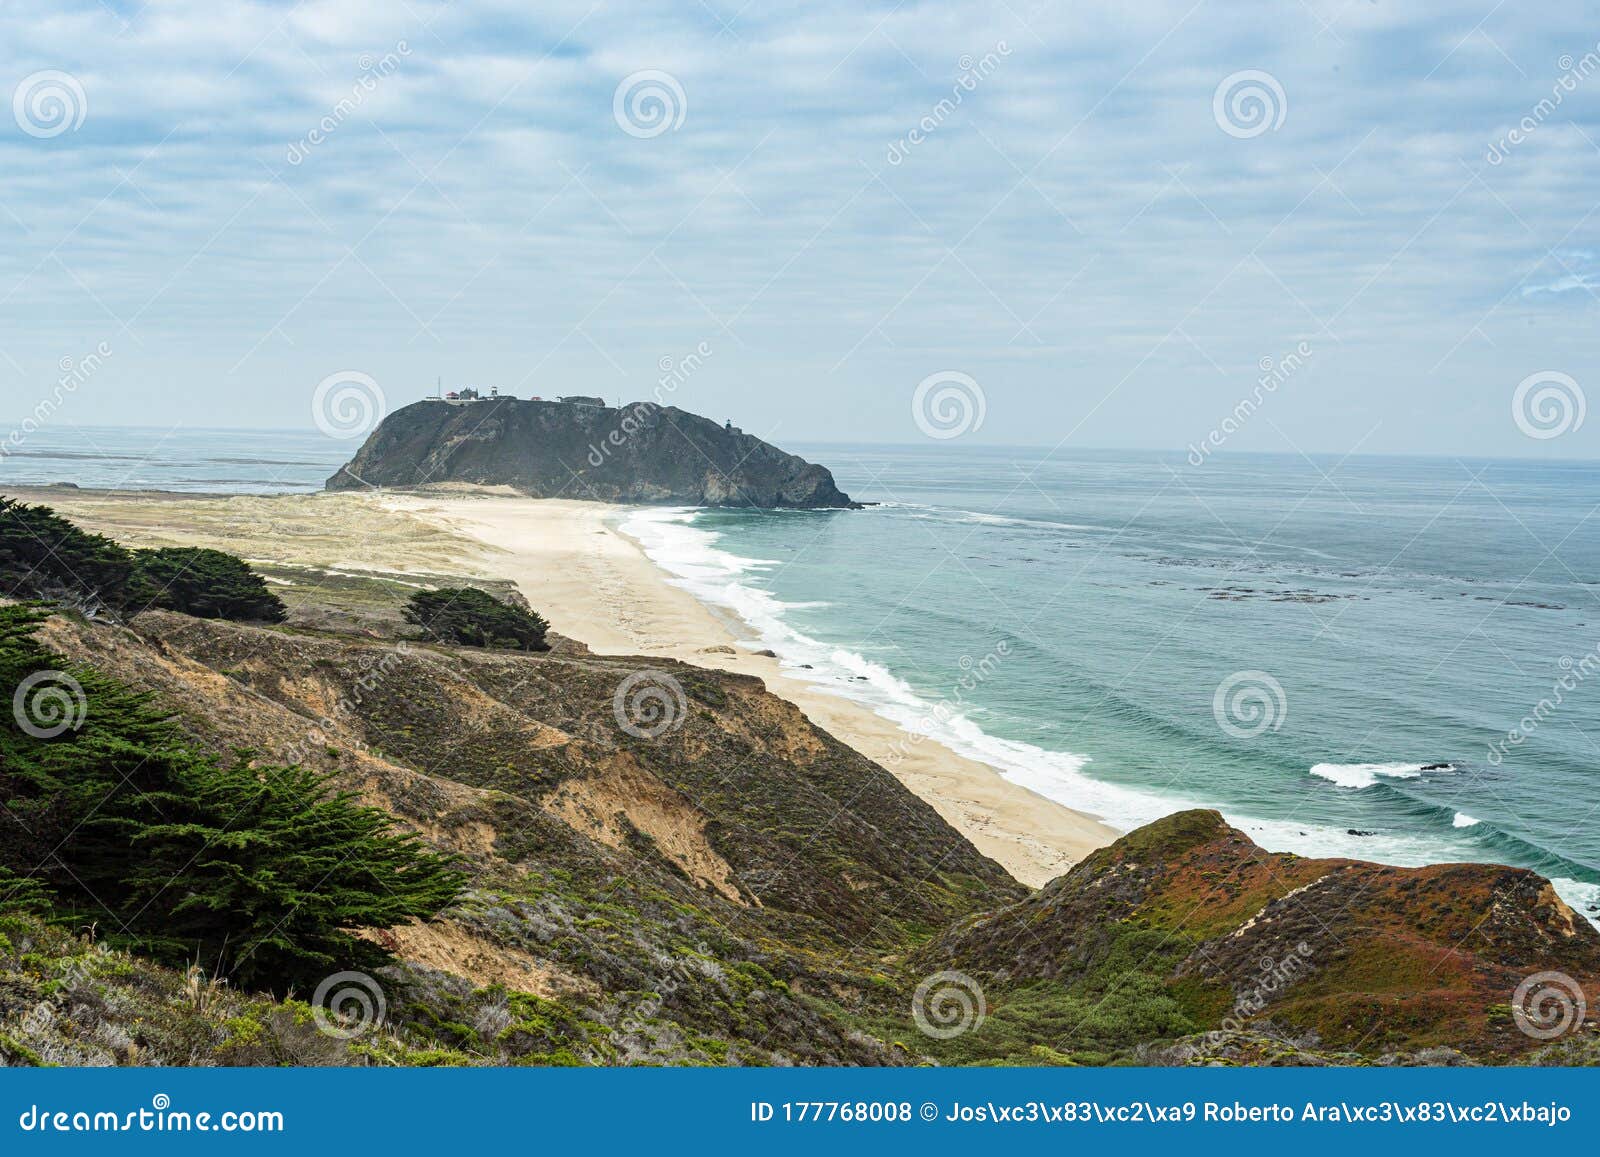 a beautiful view in  califÃÂ³rnia coast - big sur, condado de monterey, califÃÂ³rnia